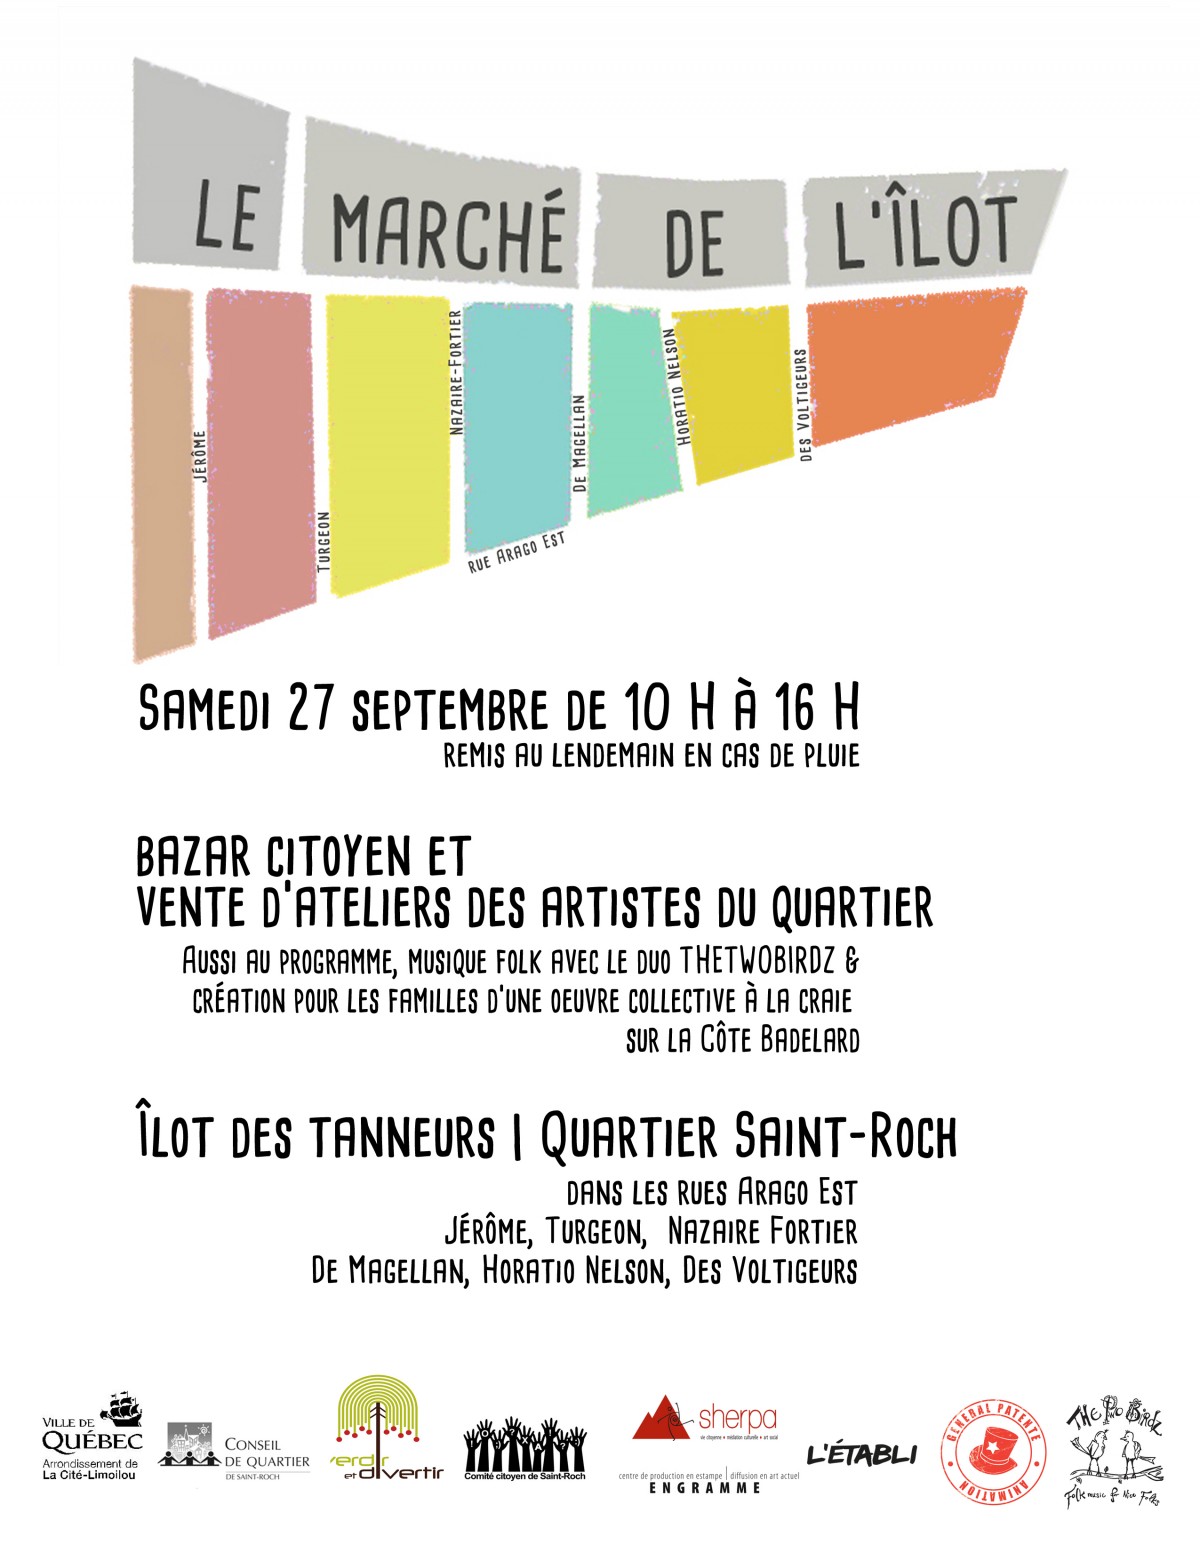 Affiche du Marché de l'Îlot, colorée avec comme logo la carte imagée de l'Îlot des tanneurs du quartier Saint-Roch. 9 logos d'organismes. Détails transcrits dans l'annonce.